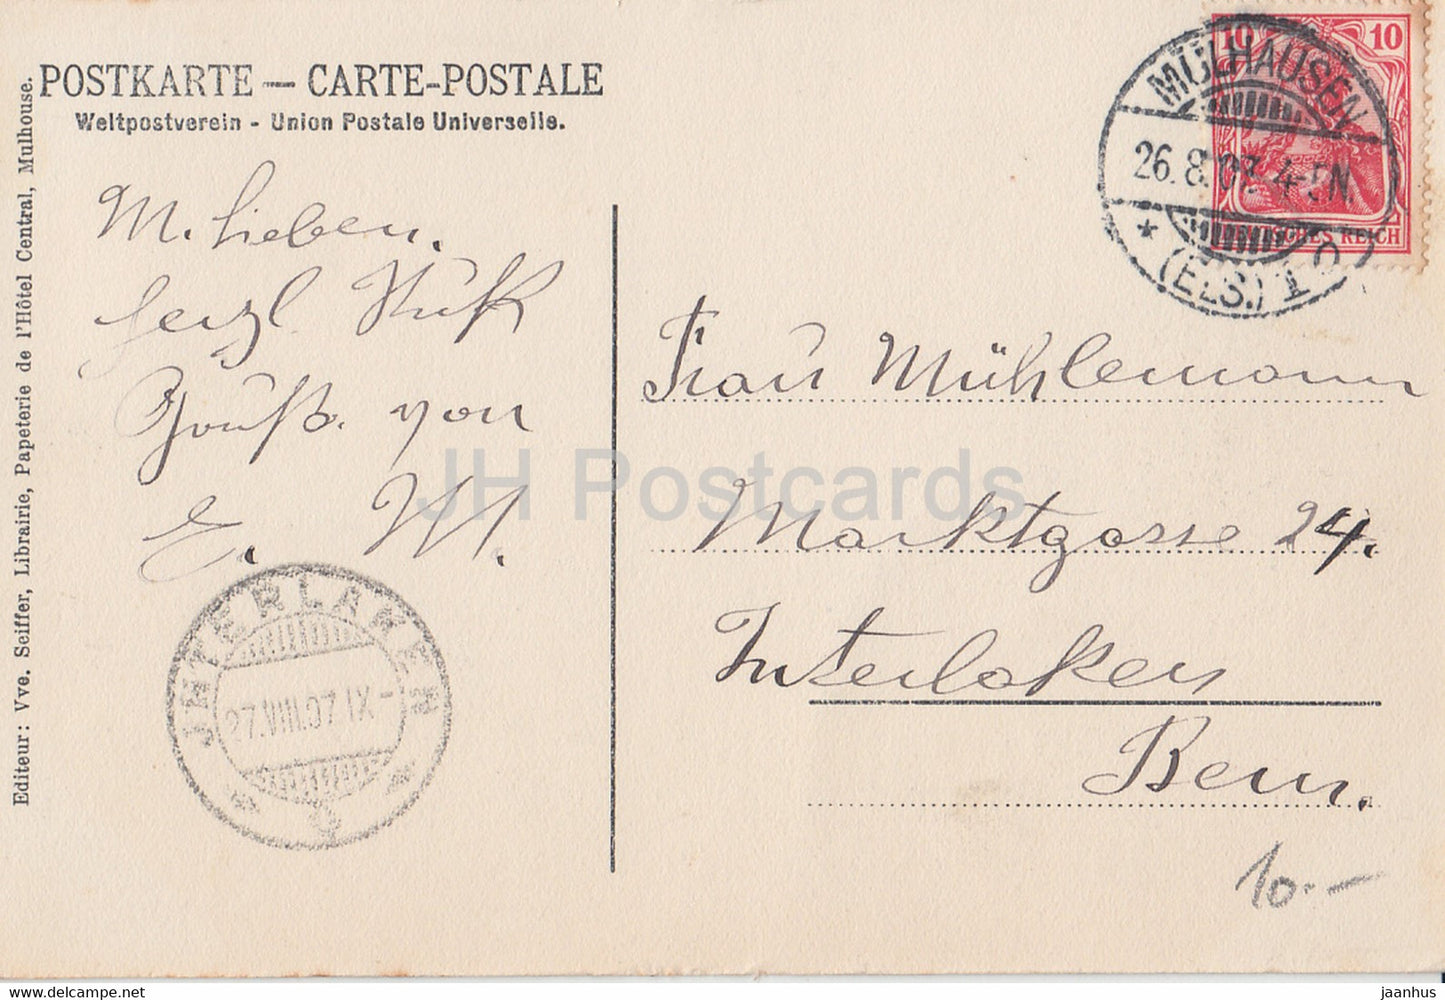 Mulhausen i Els - Mulhouse - La Poste et Bassin - Die Post und Kanal - carte postale ancienne - 1907 - France - utilisé